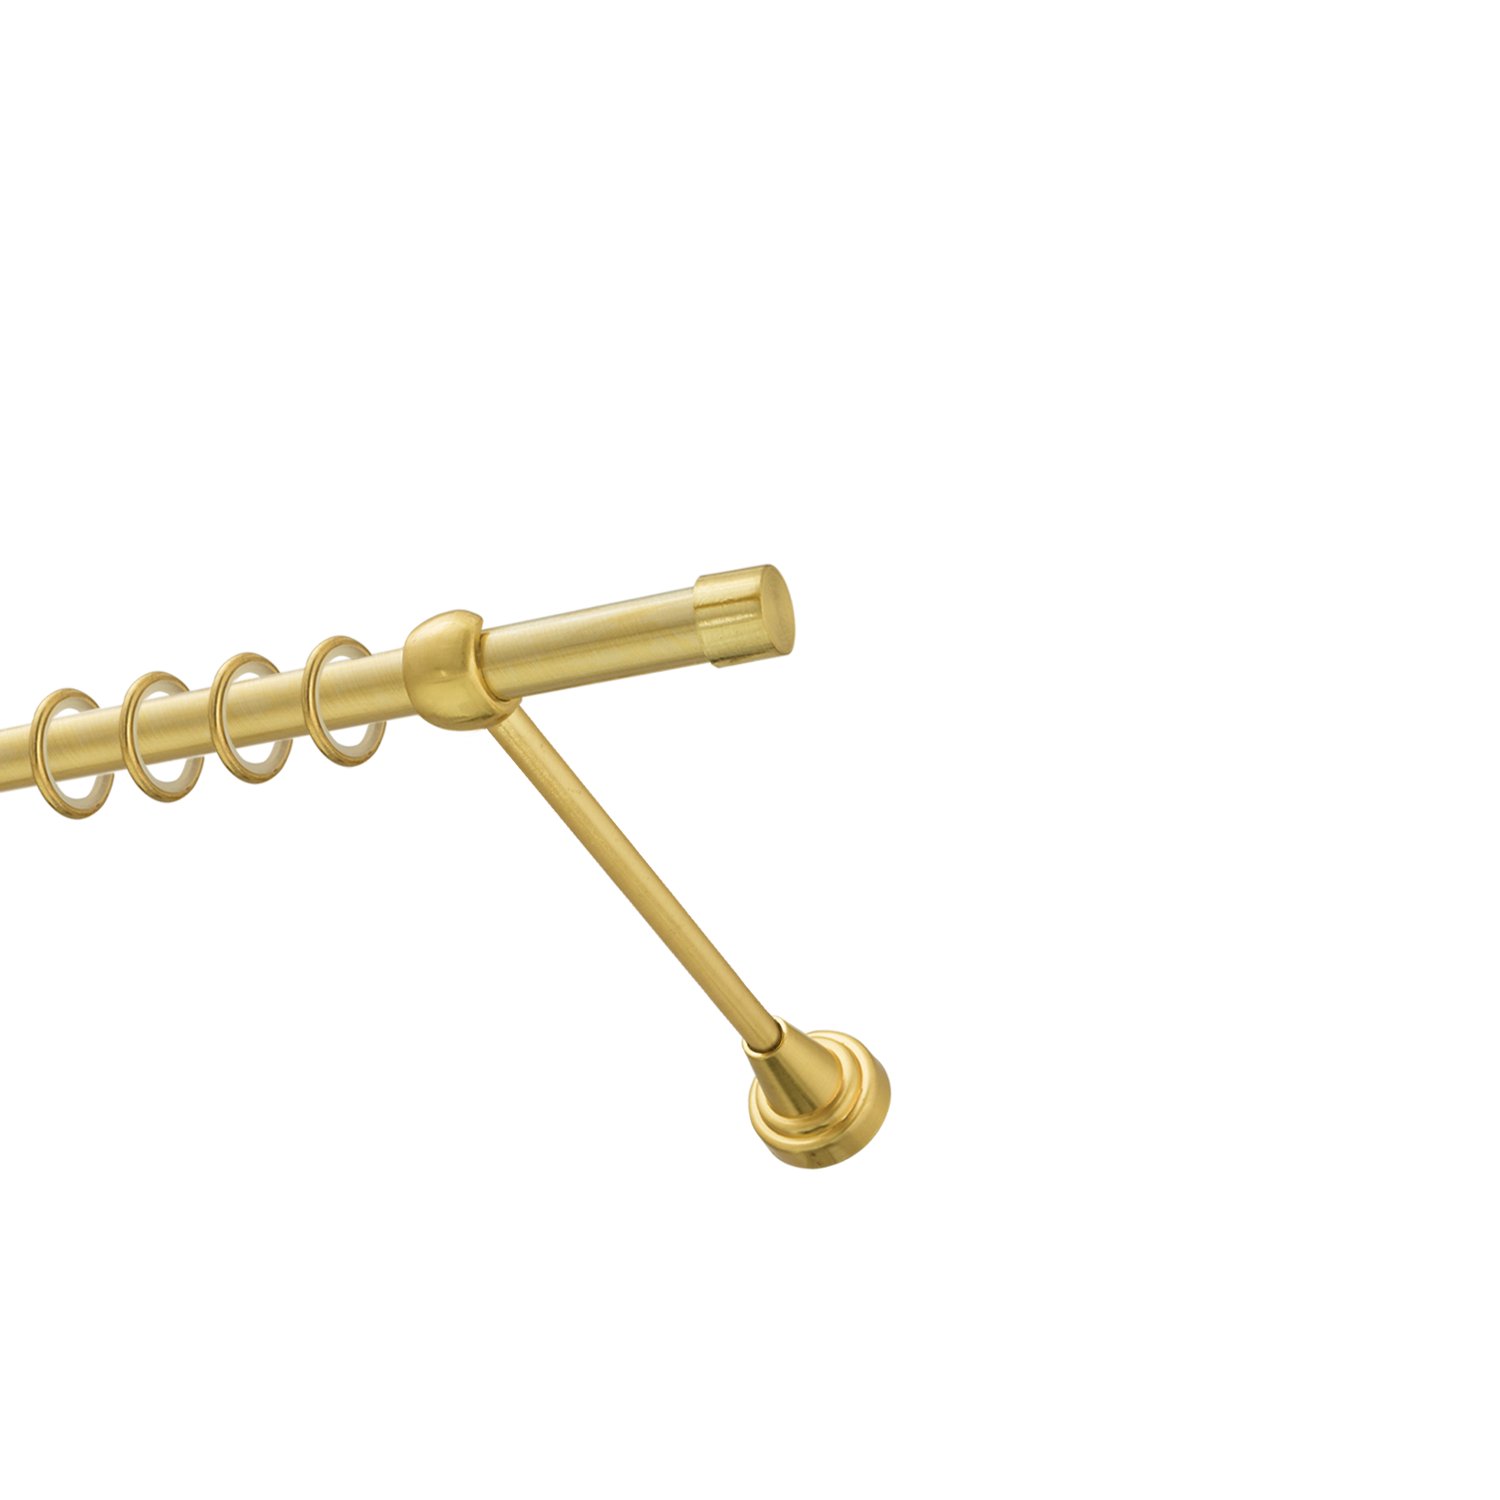 Металлический карниз для штор Заглушка, однорядный 16 мм, золото, гладкая штанга, длина 240 см - фото Wikidecor.ru